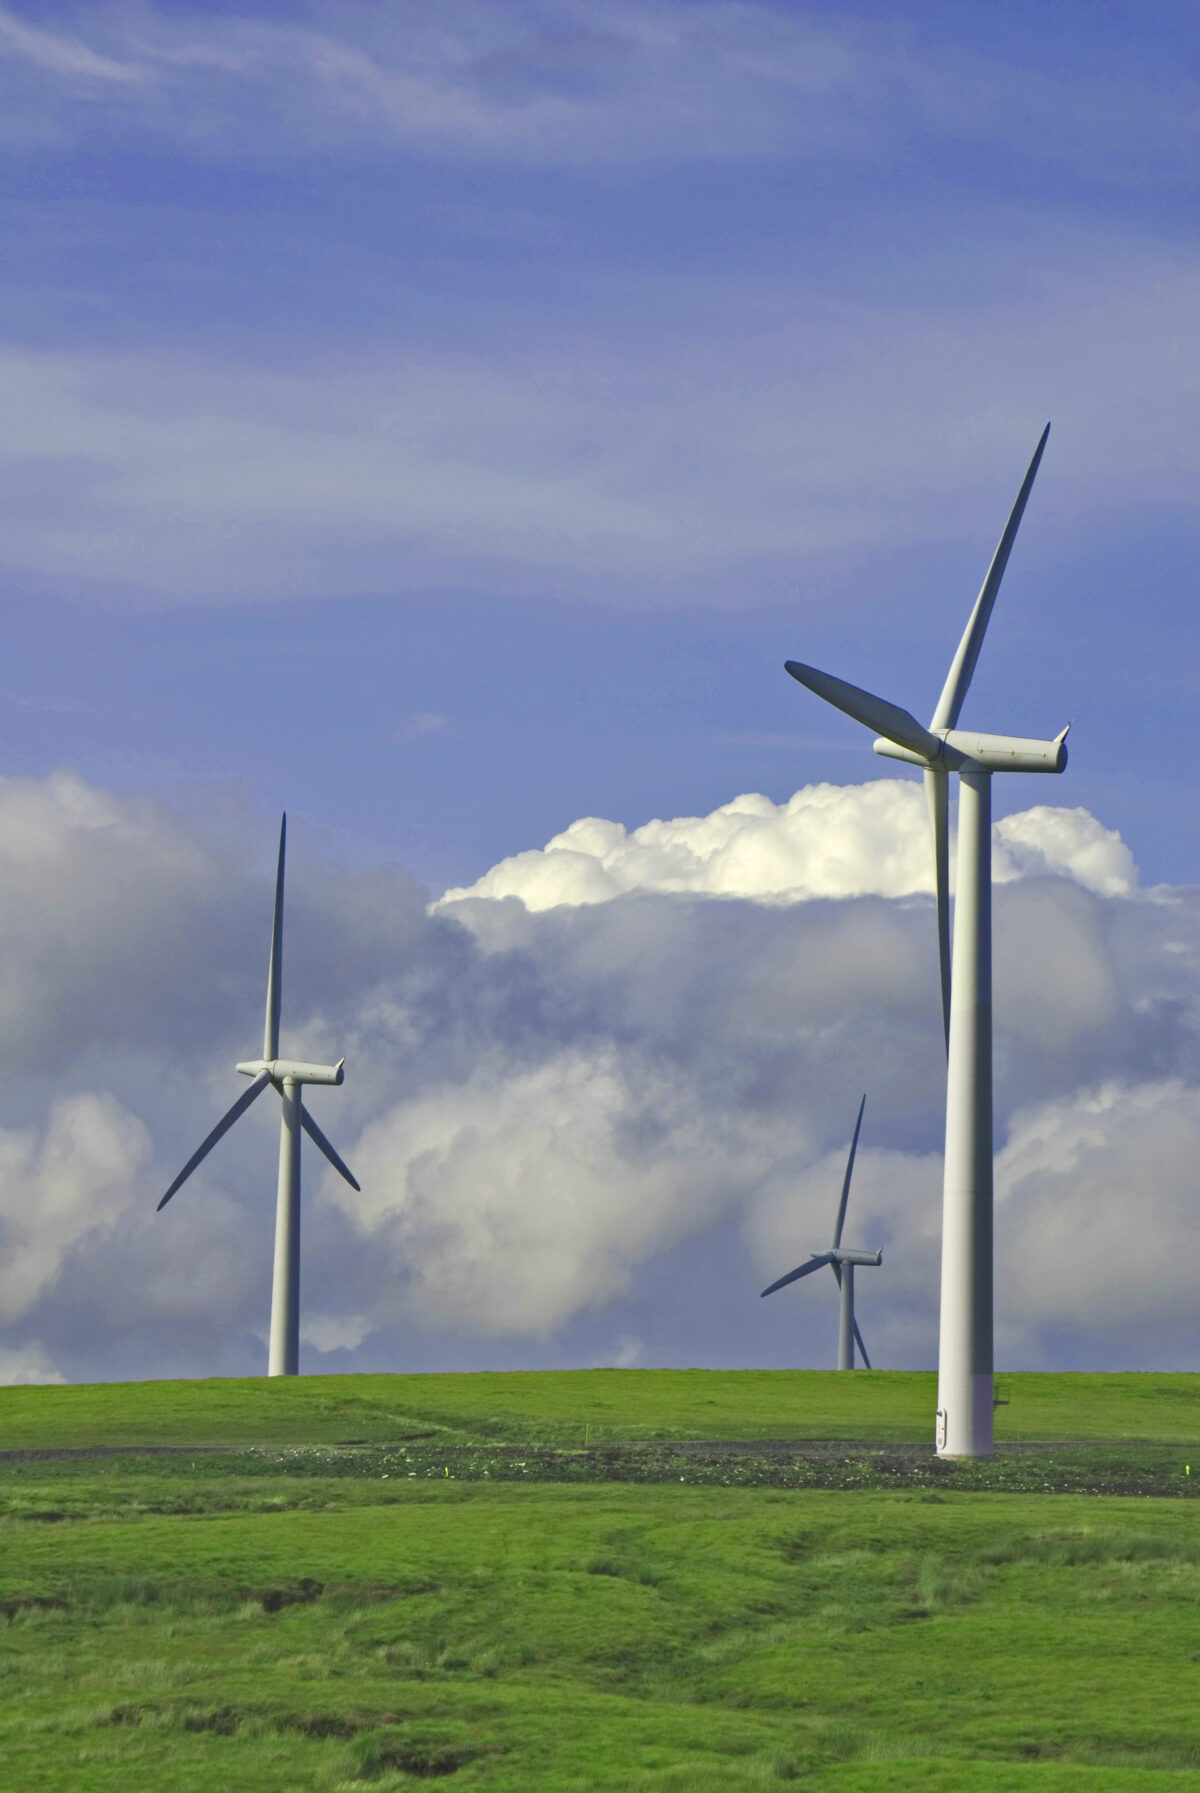 NMU wil sneller meer windenergie in provincie Utrecht